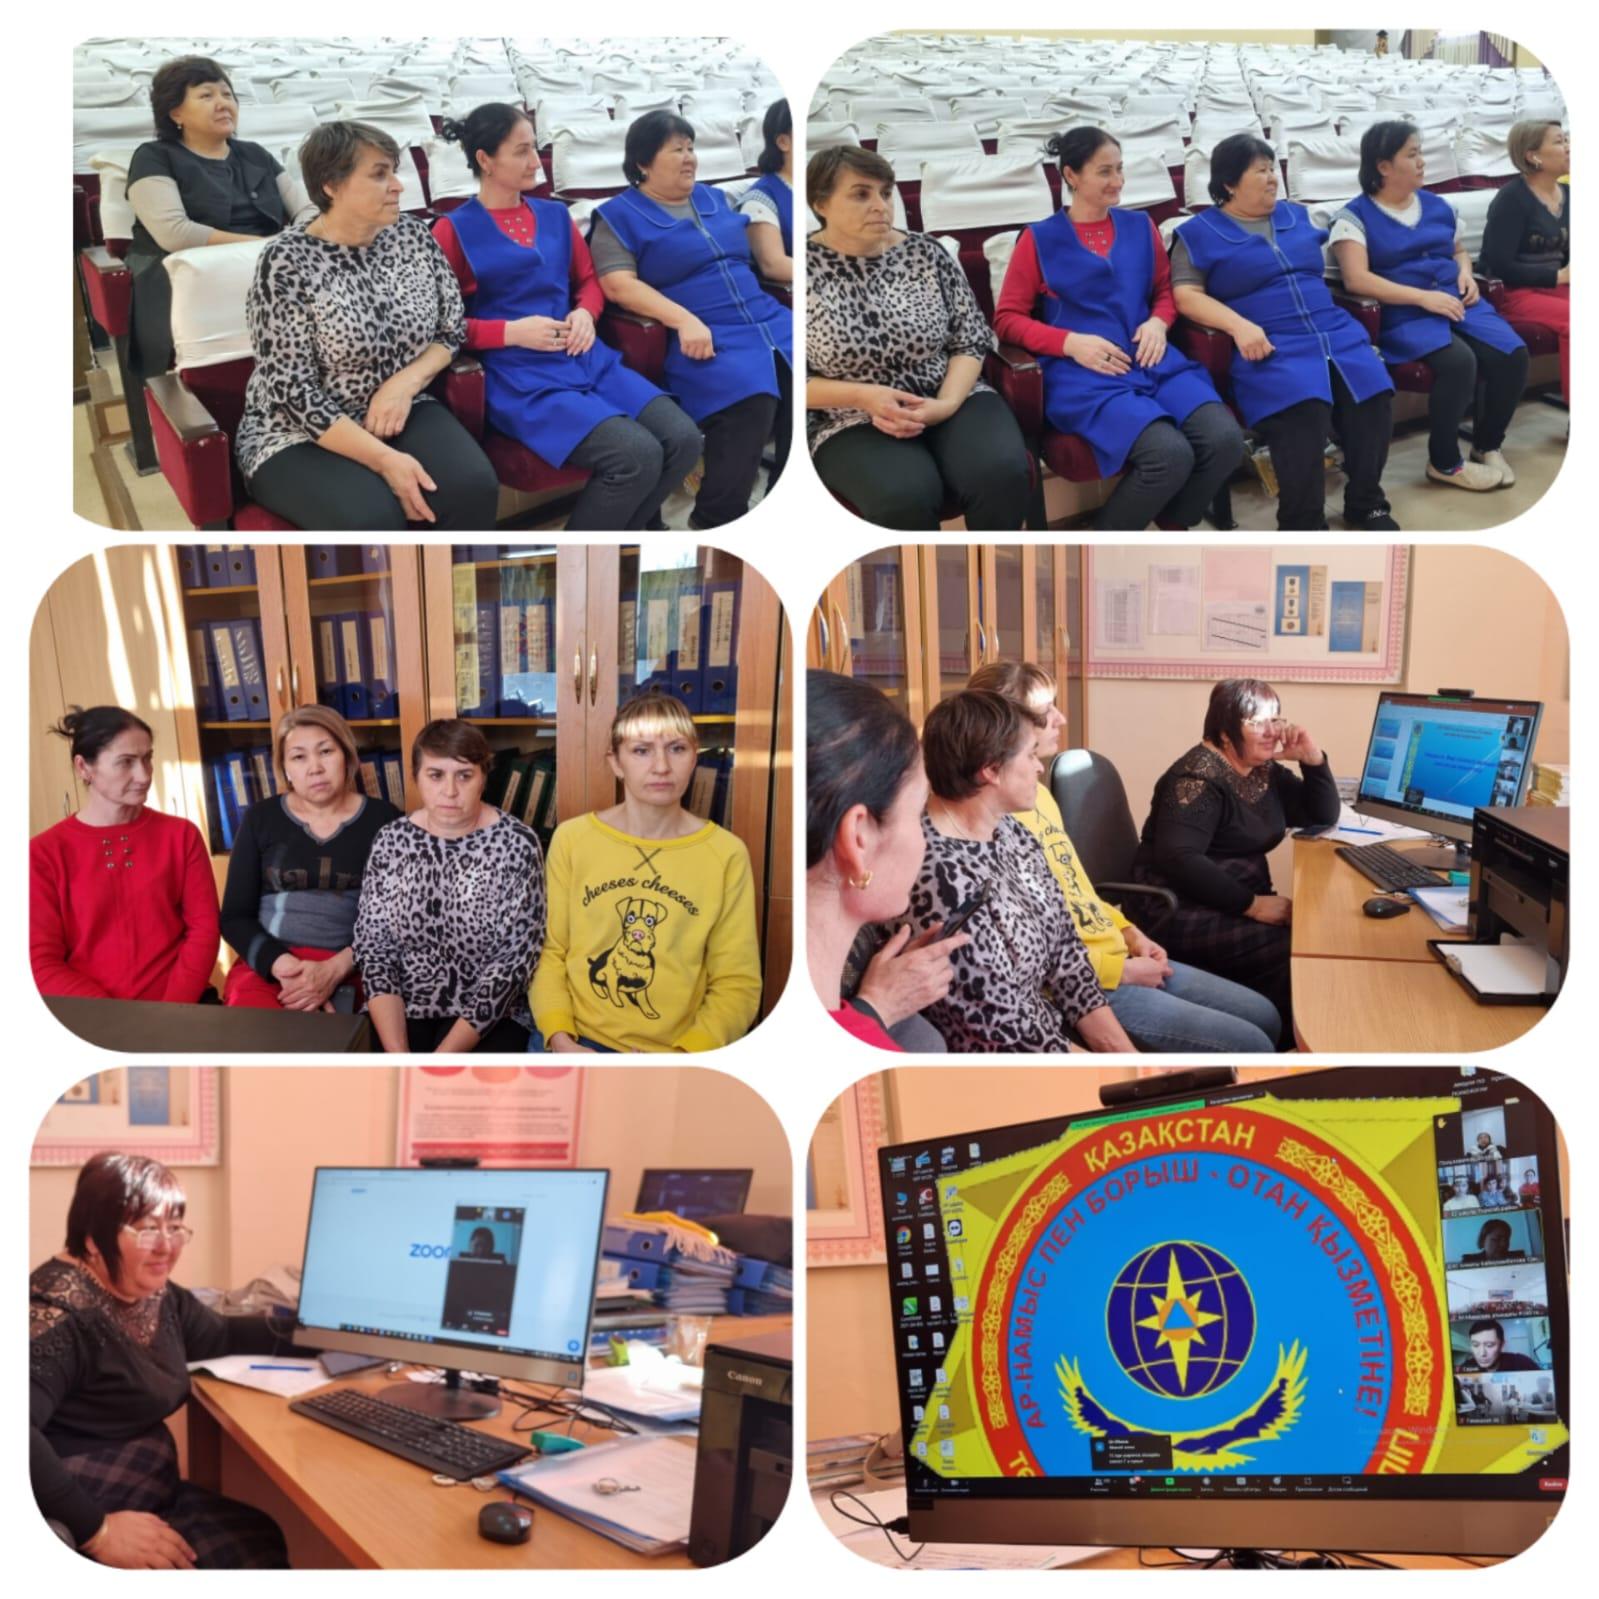 Ата-аналарға төтенше жағдайлар жөніндегі департаментінің онлайн сабағы/ Онлайн урок для родителей Департамента по ЧС города Алматы